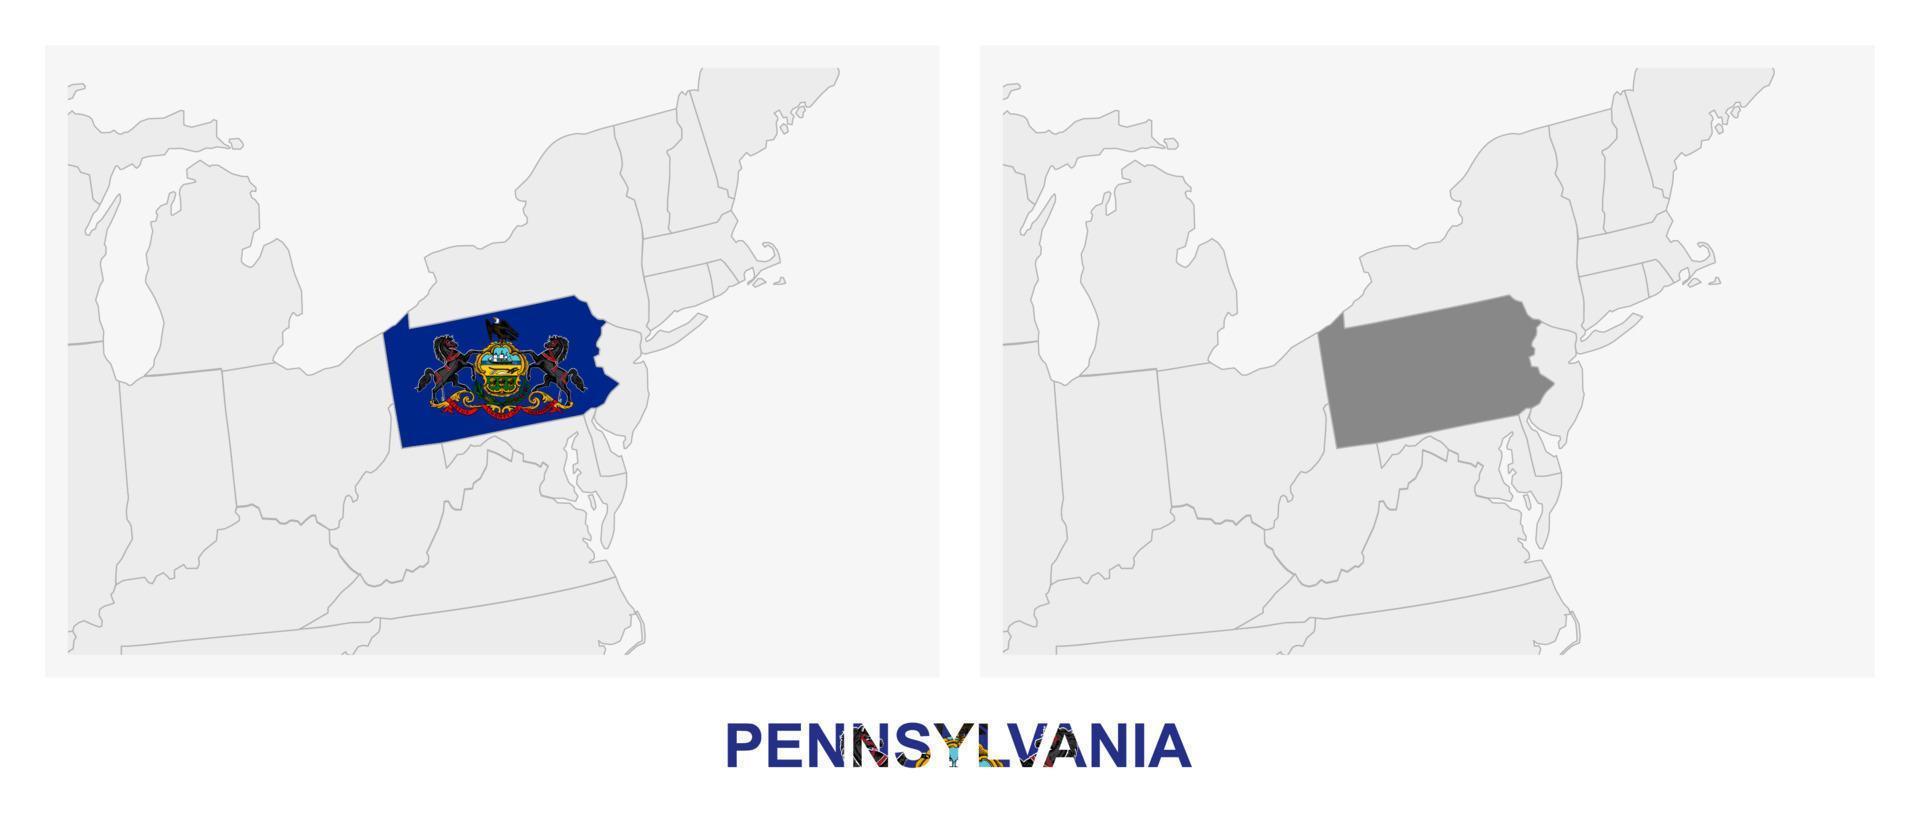 duas versões do mapa do estado americano da pensilvânia, com a bandeira da pensilvânia e realçada em cinza escuro. vetor